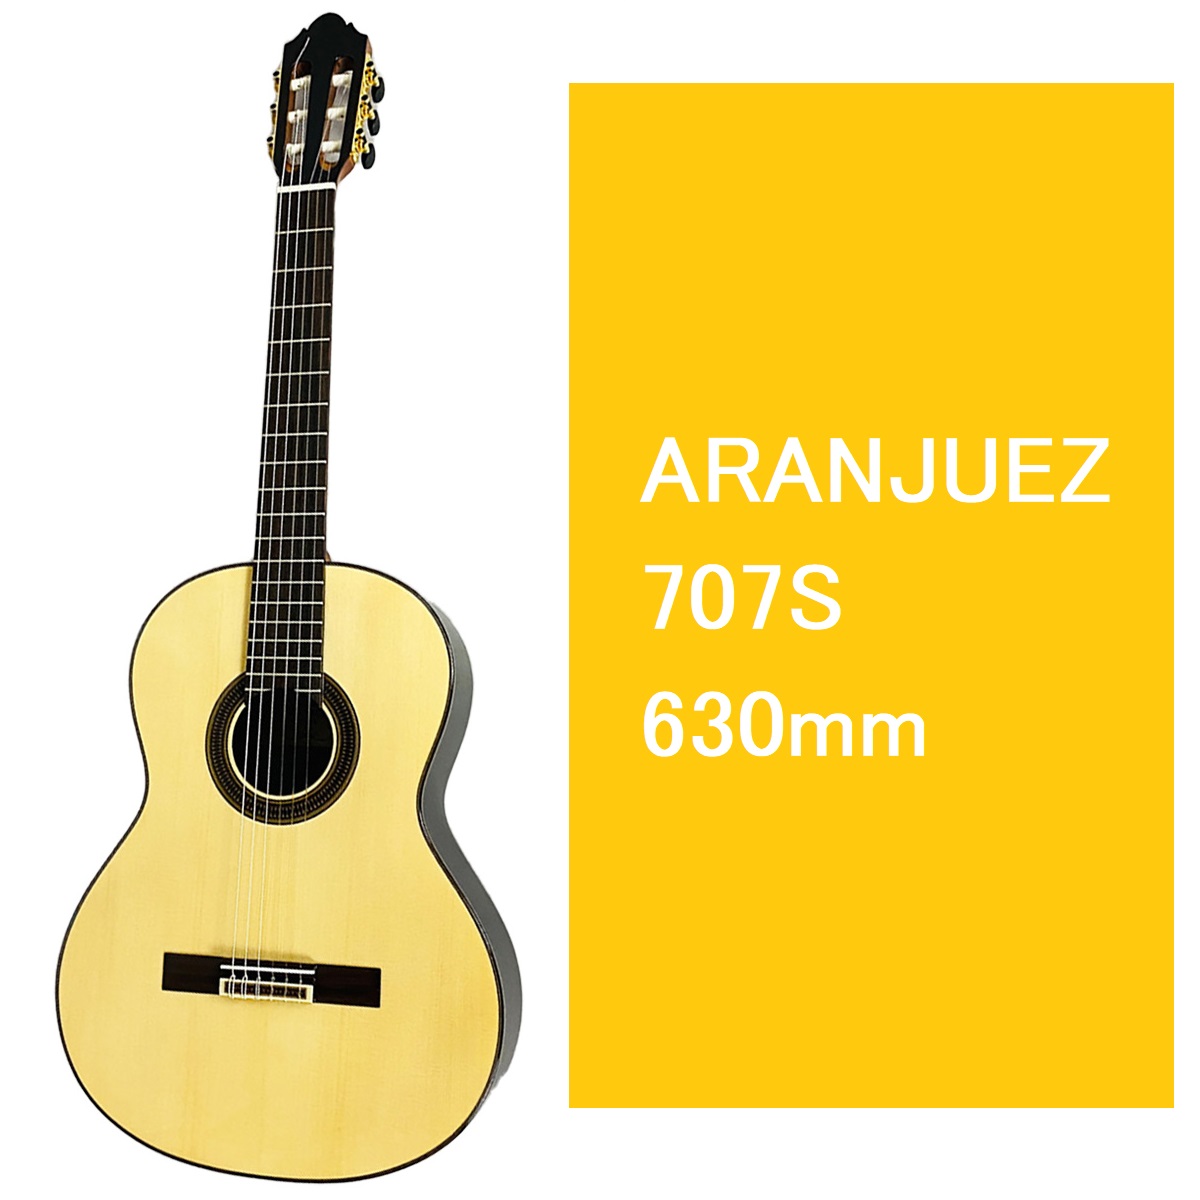 島村楽器大分店に、ARANJUEZ(アランフェス)のクラシックギター『707S 630mm』が入荷致しました！ 日本人の体格に合わせたネックの厚みや形状を追求した、弾きやすさにこだわった島村楽器オリジナルのエントリーモデル。これからギターを始める方にも自信を持っておすすめします。 アランフェスギター […]